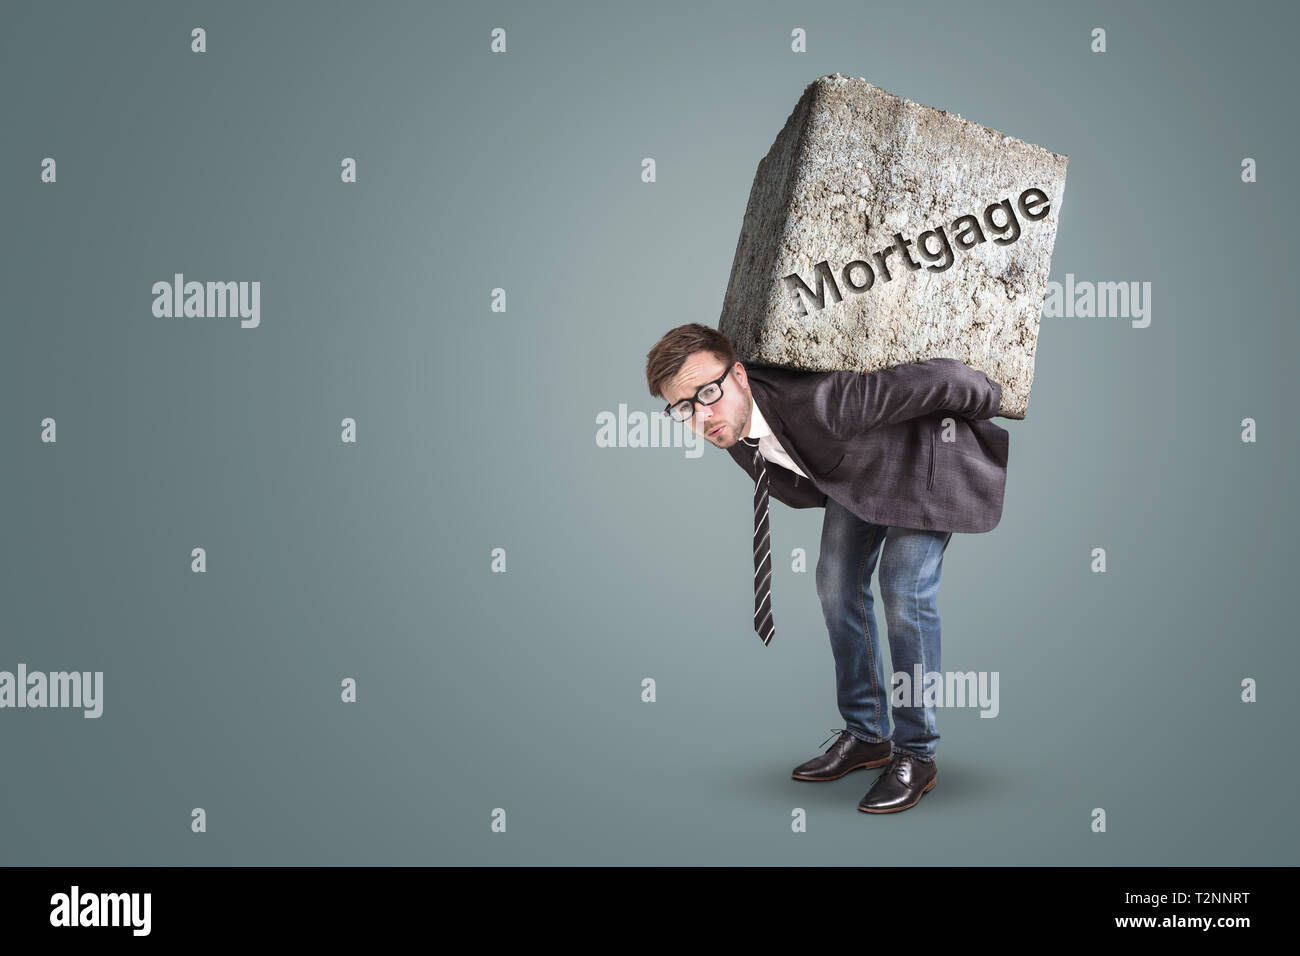 Concept d'un homme portant une grosse pierre avec le mot "hypothèque" sur c Banque D'Images